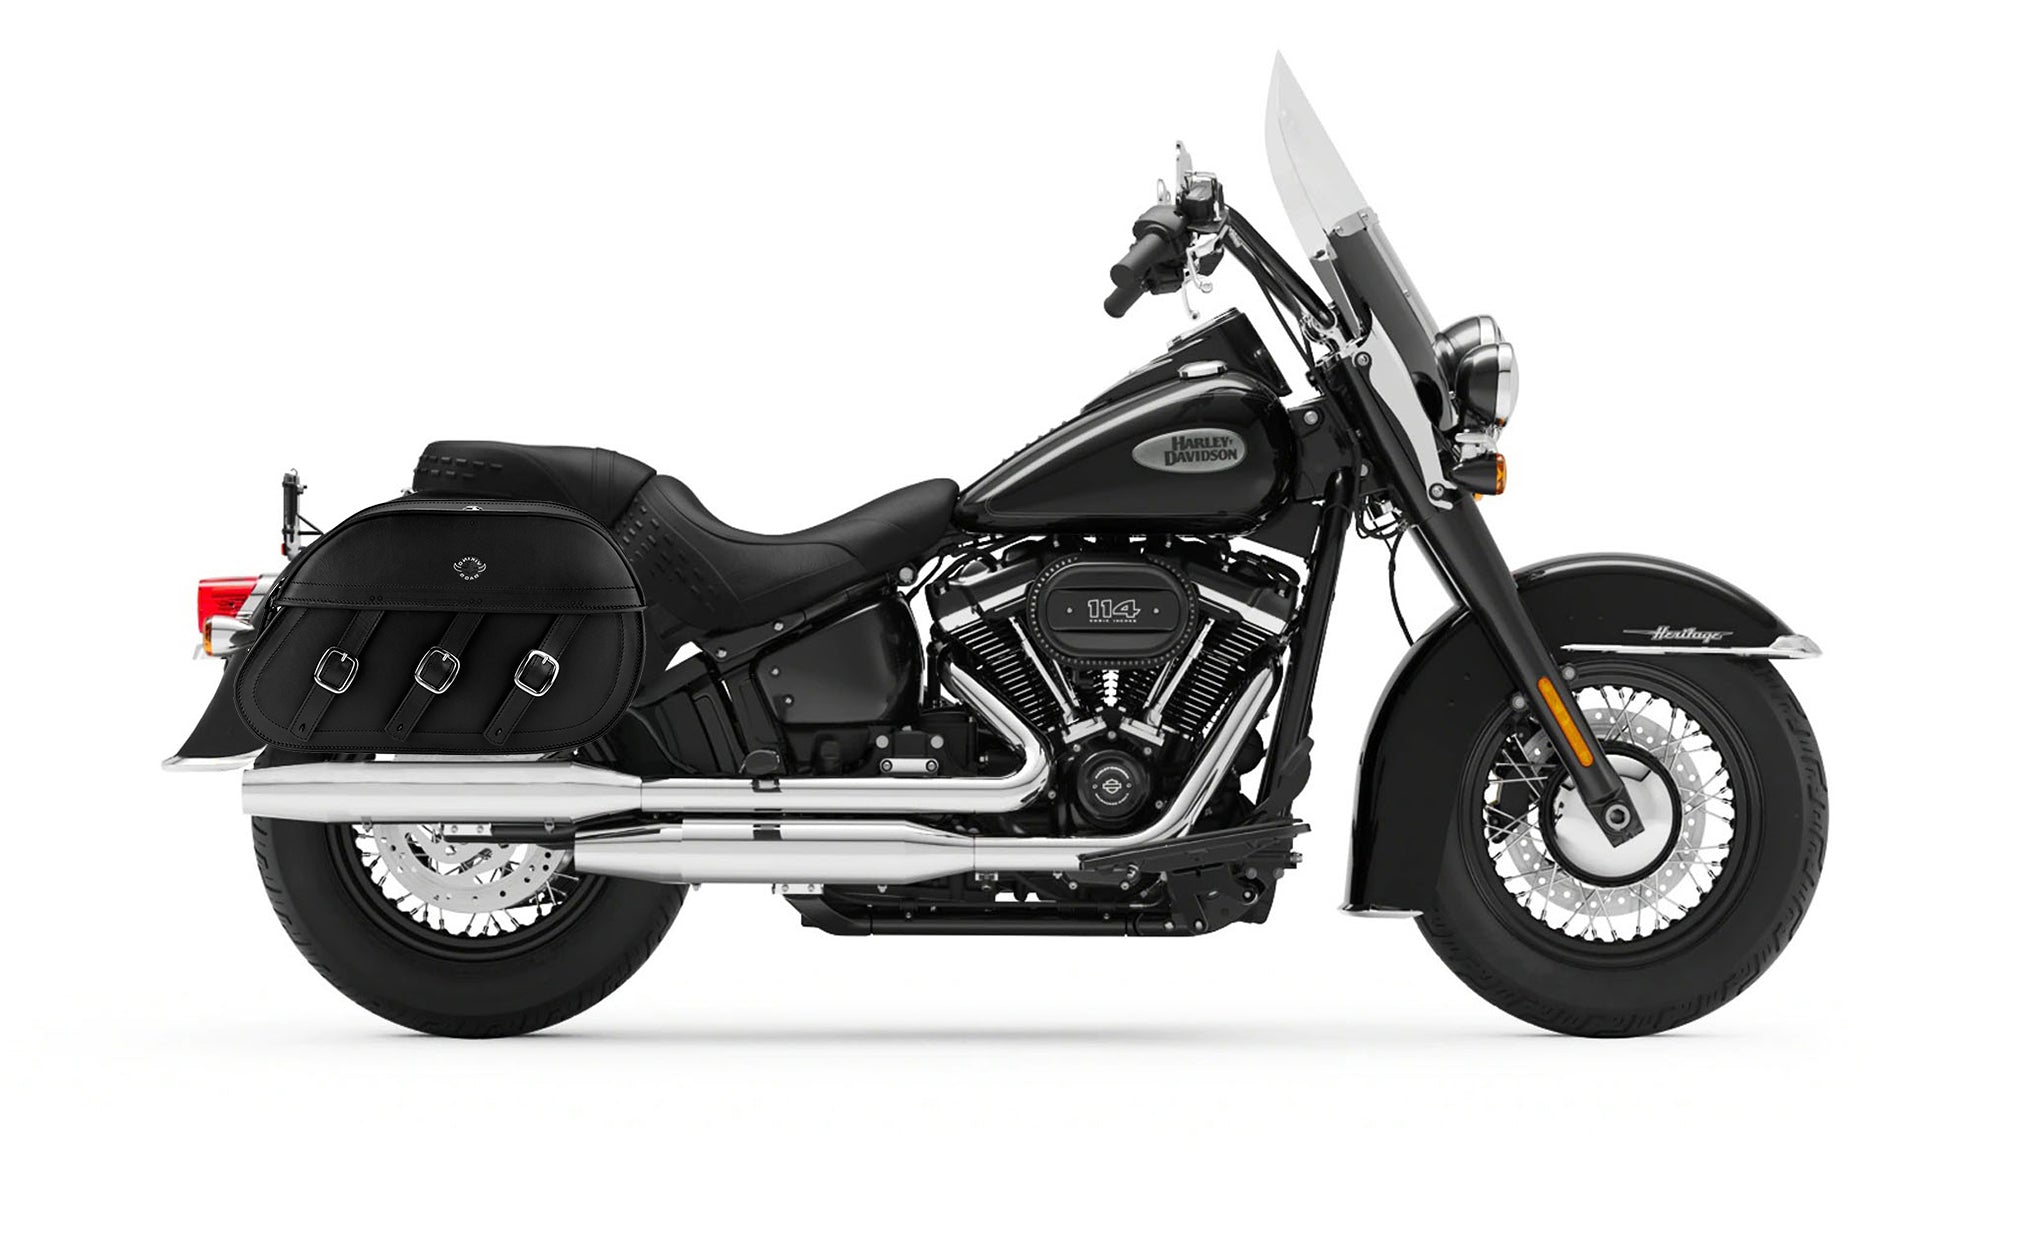 Viking Trianon Extra Large Leather Motorcycle Saddlebags For Harley Softail Heritage Flst I C Ci on Bike Photo @expand